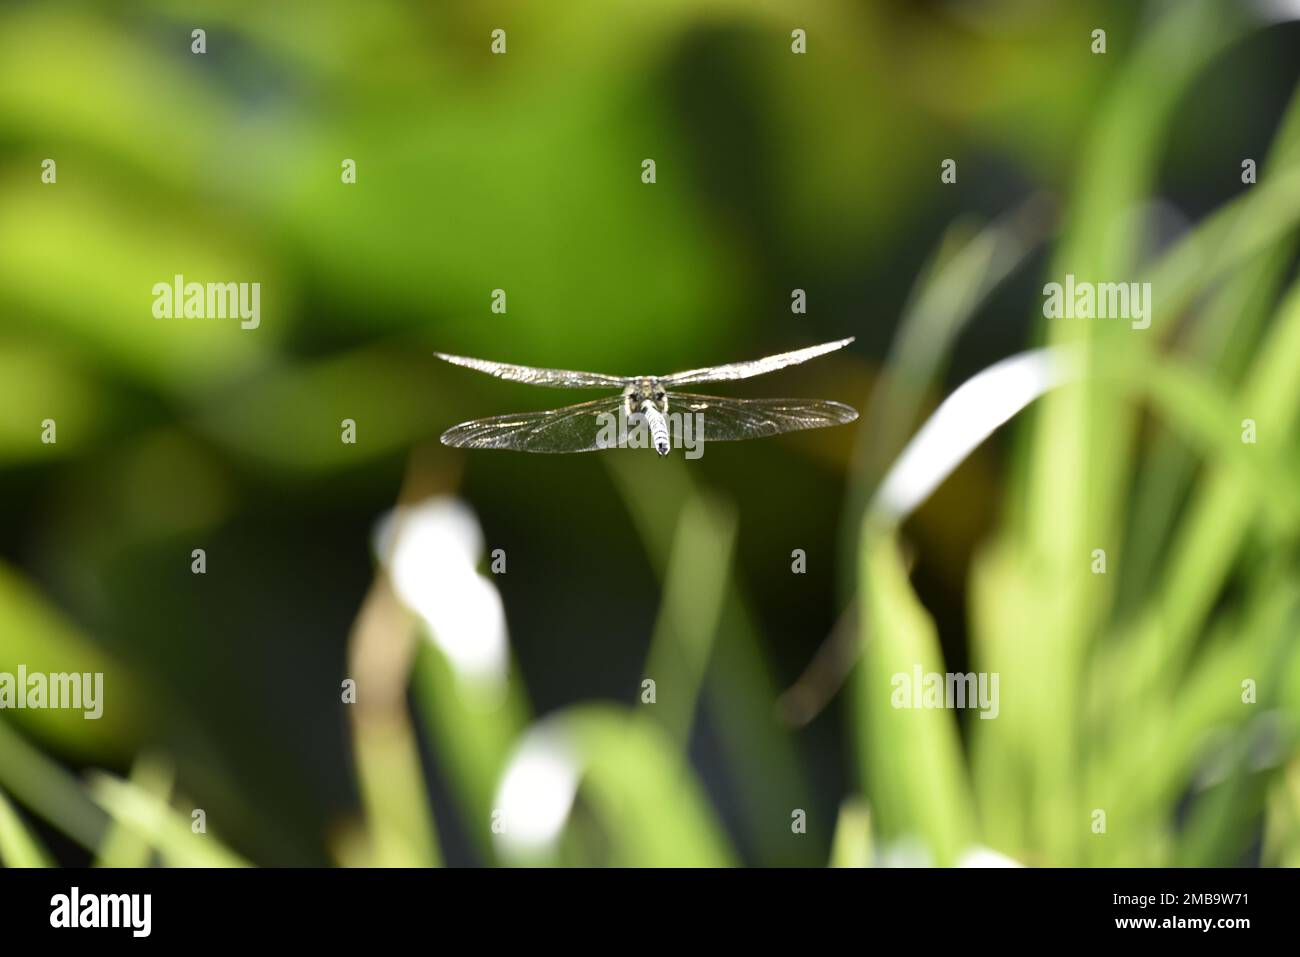 Vista ravvicinata da dietro di una libellula maschio del Southern Hawker (Aeshna cyanea) che vola lontano dalla macchina fotografica, sopra i gambi verdi illuminati dal sole verso lo stagno nel Regno Unito Foto Stock